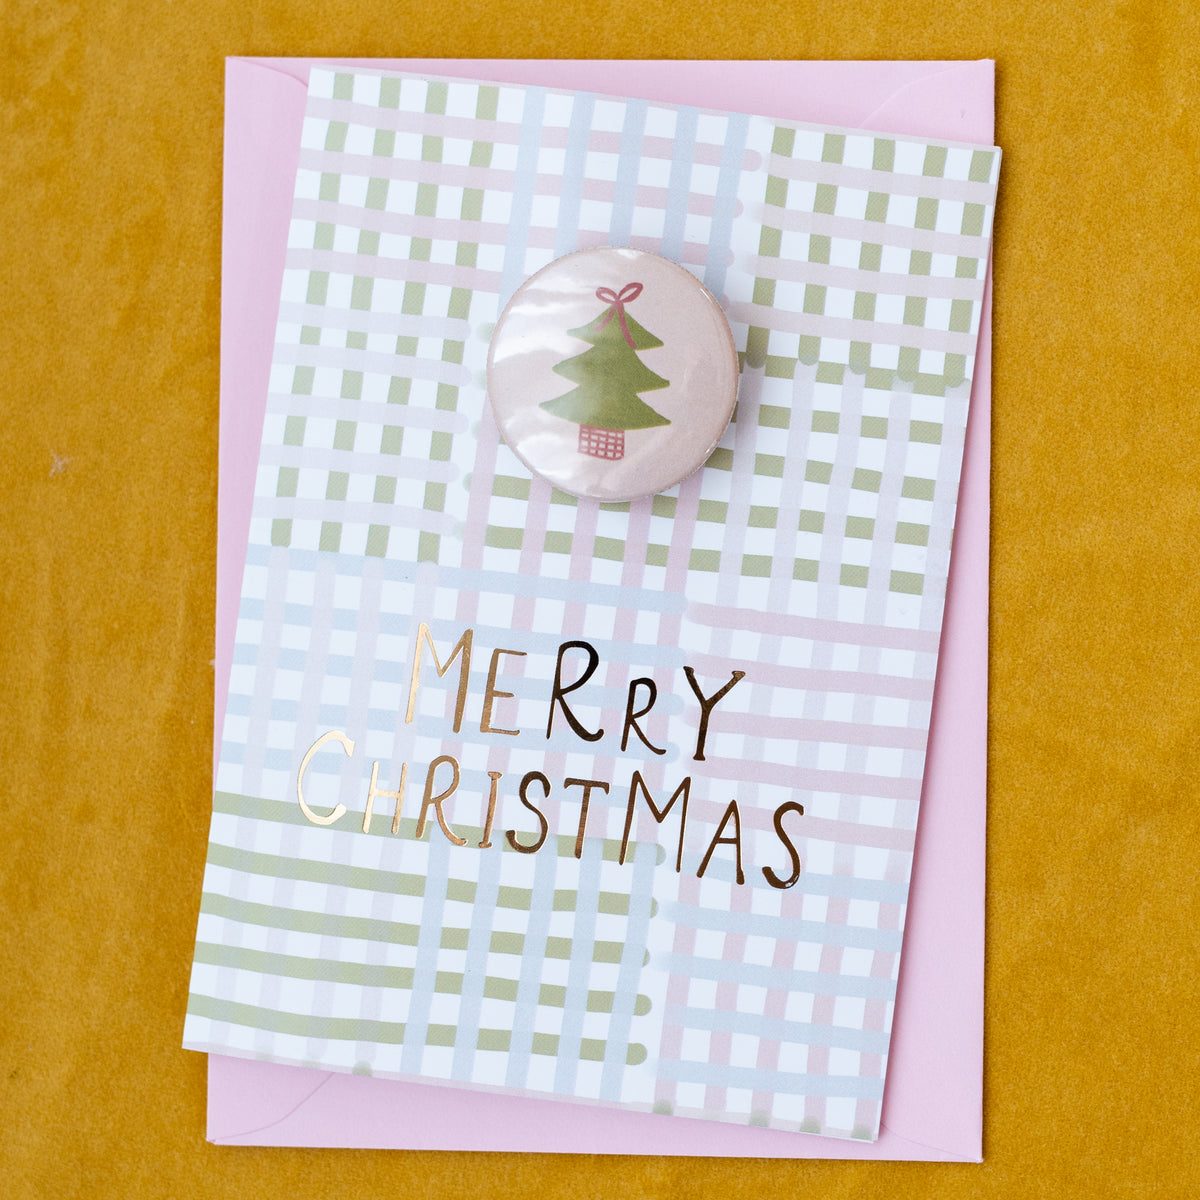 ‘Merry Christmas’ Card with Christmas Tree Badge